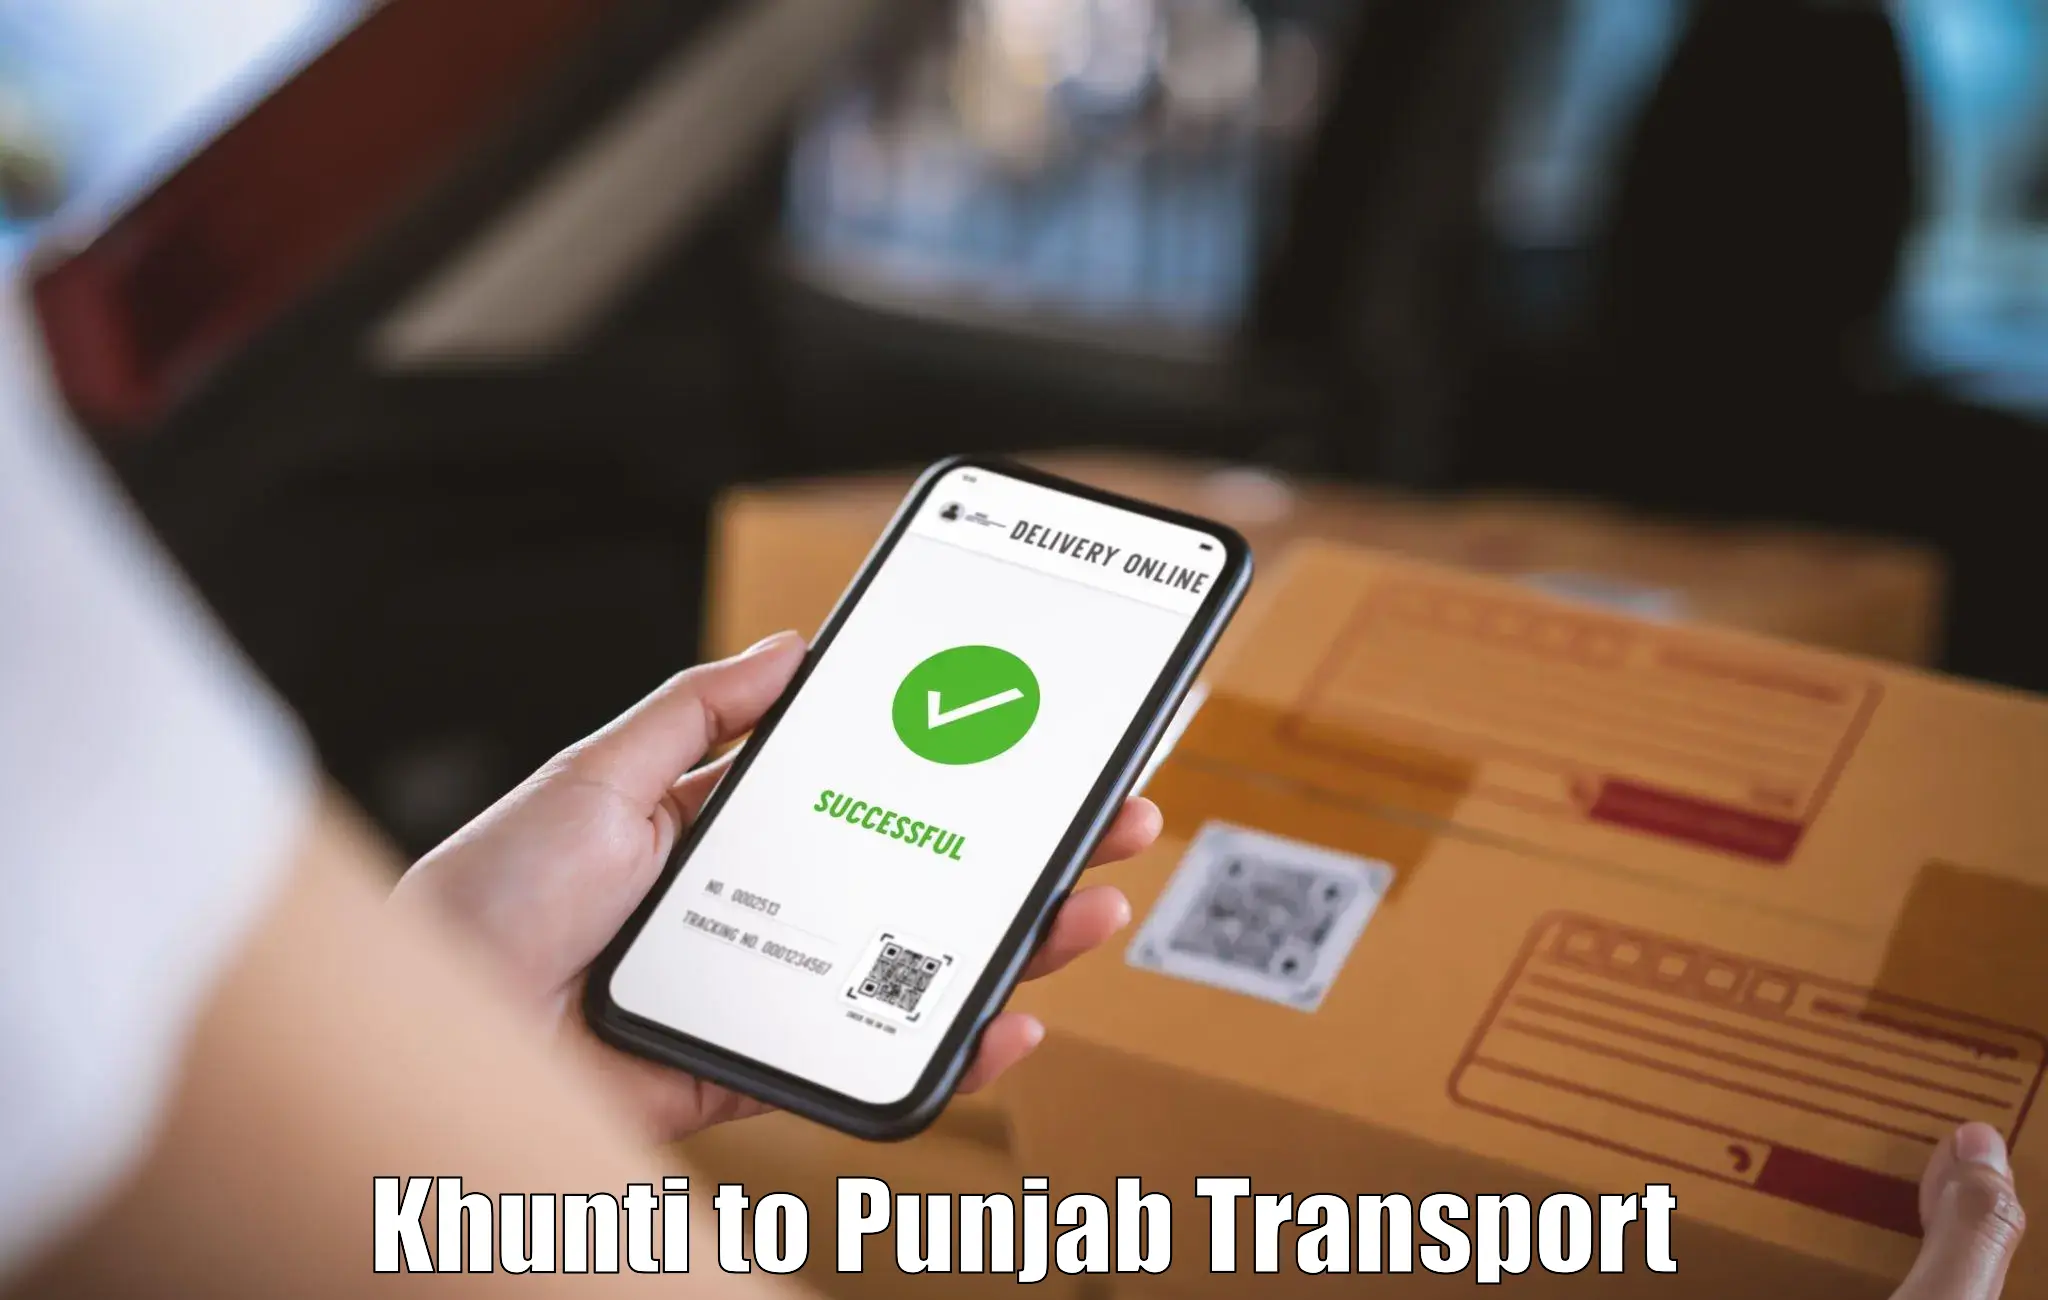 Transport in sharing Khunti to Talwara